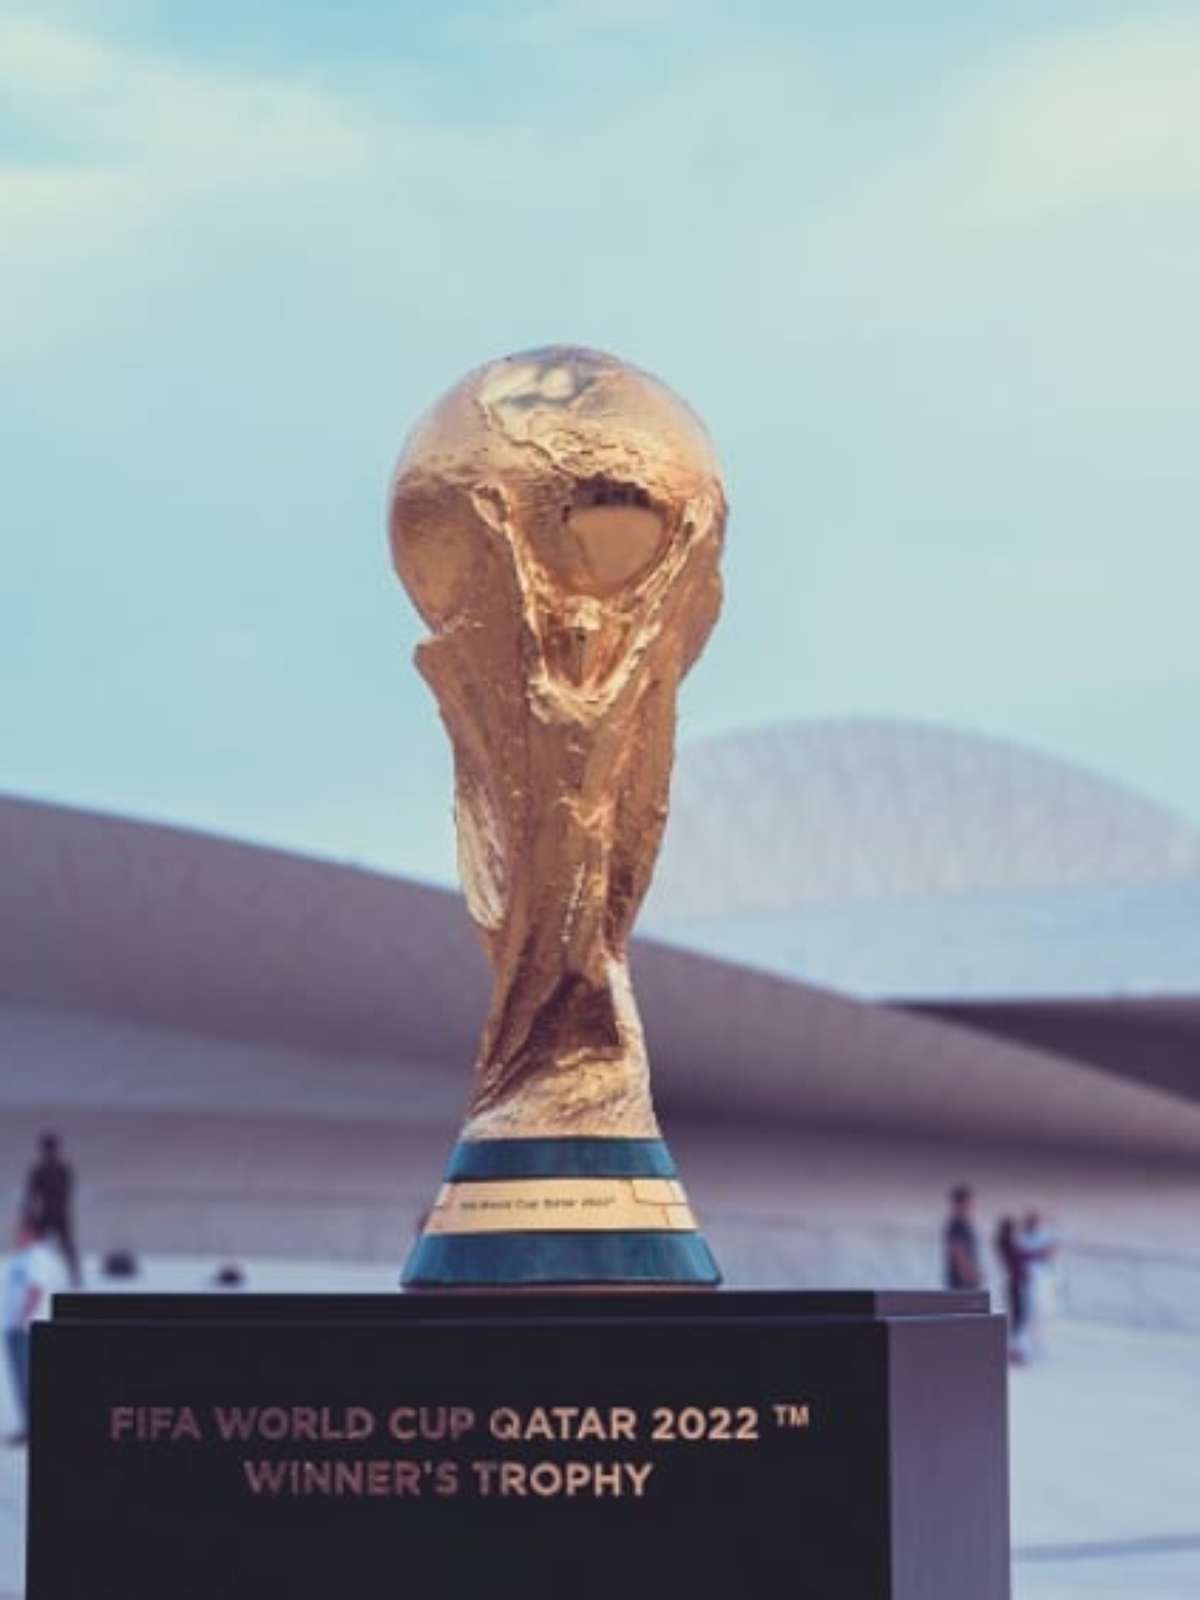 Quem são os convocados das seleções para a Copa do Mundo 2022